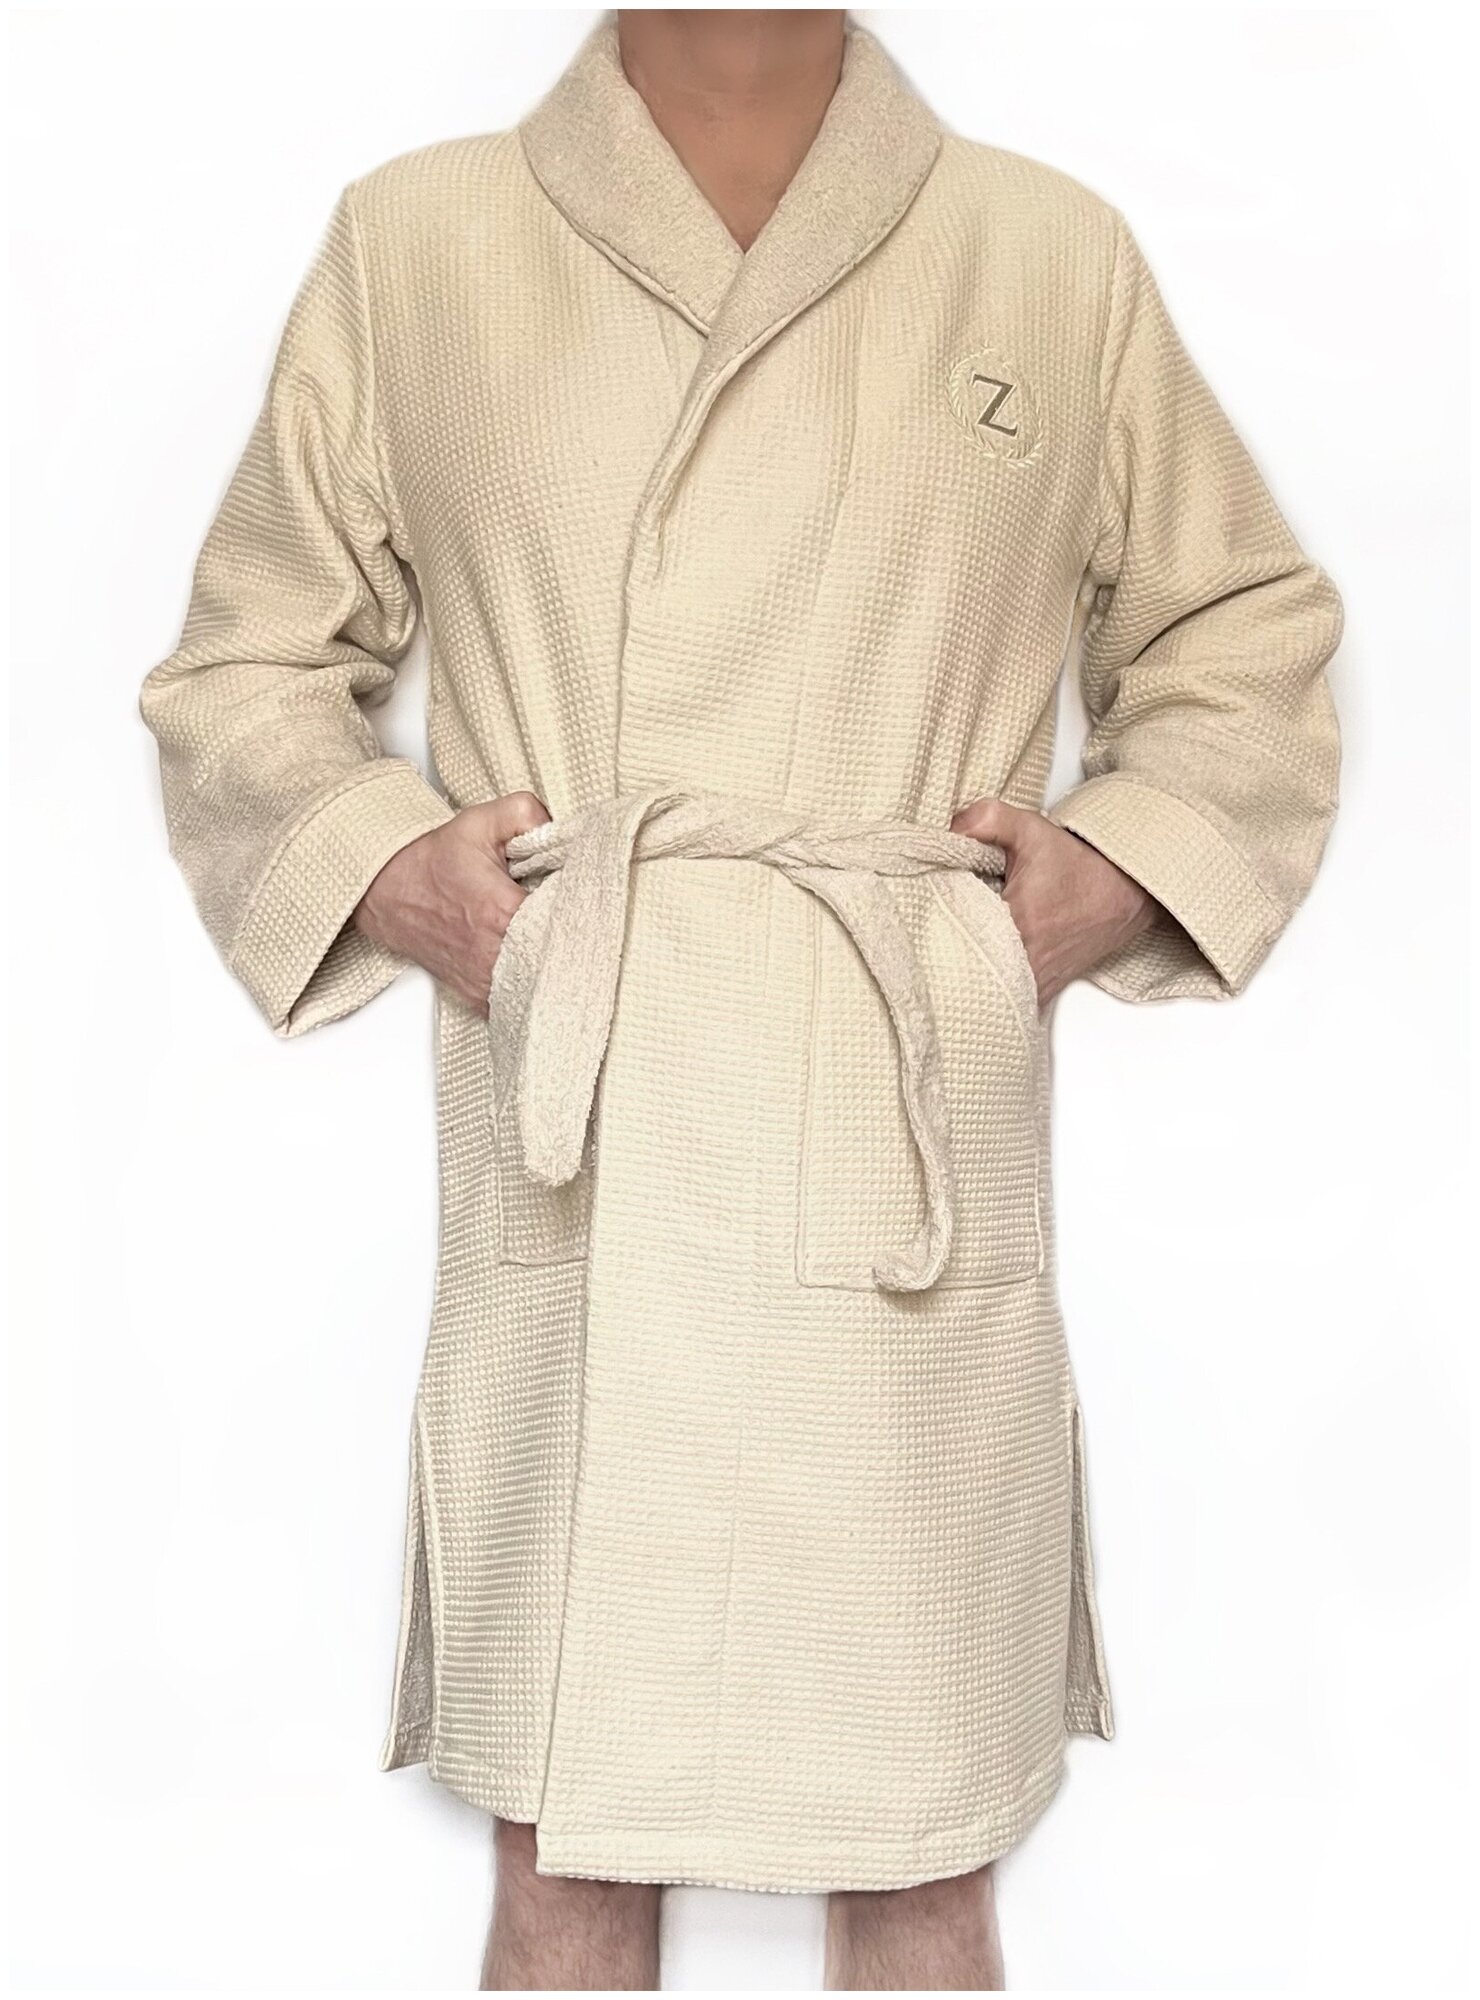 Мужской махровый халат + 2 полотенца Cream, ZARIN HOME, набор, подарок мужчине. Подарок на 23 февраля. - фотография № 2